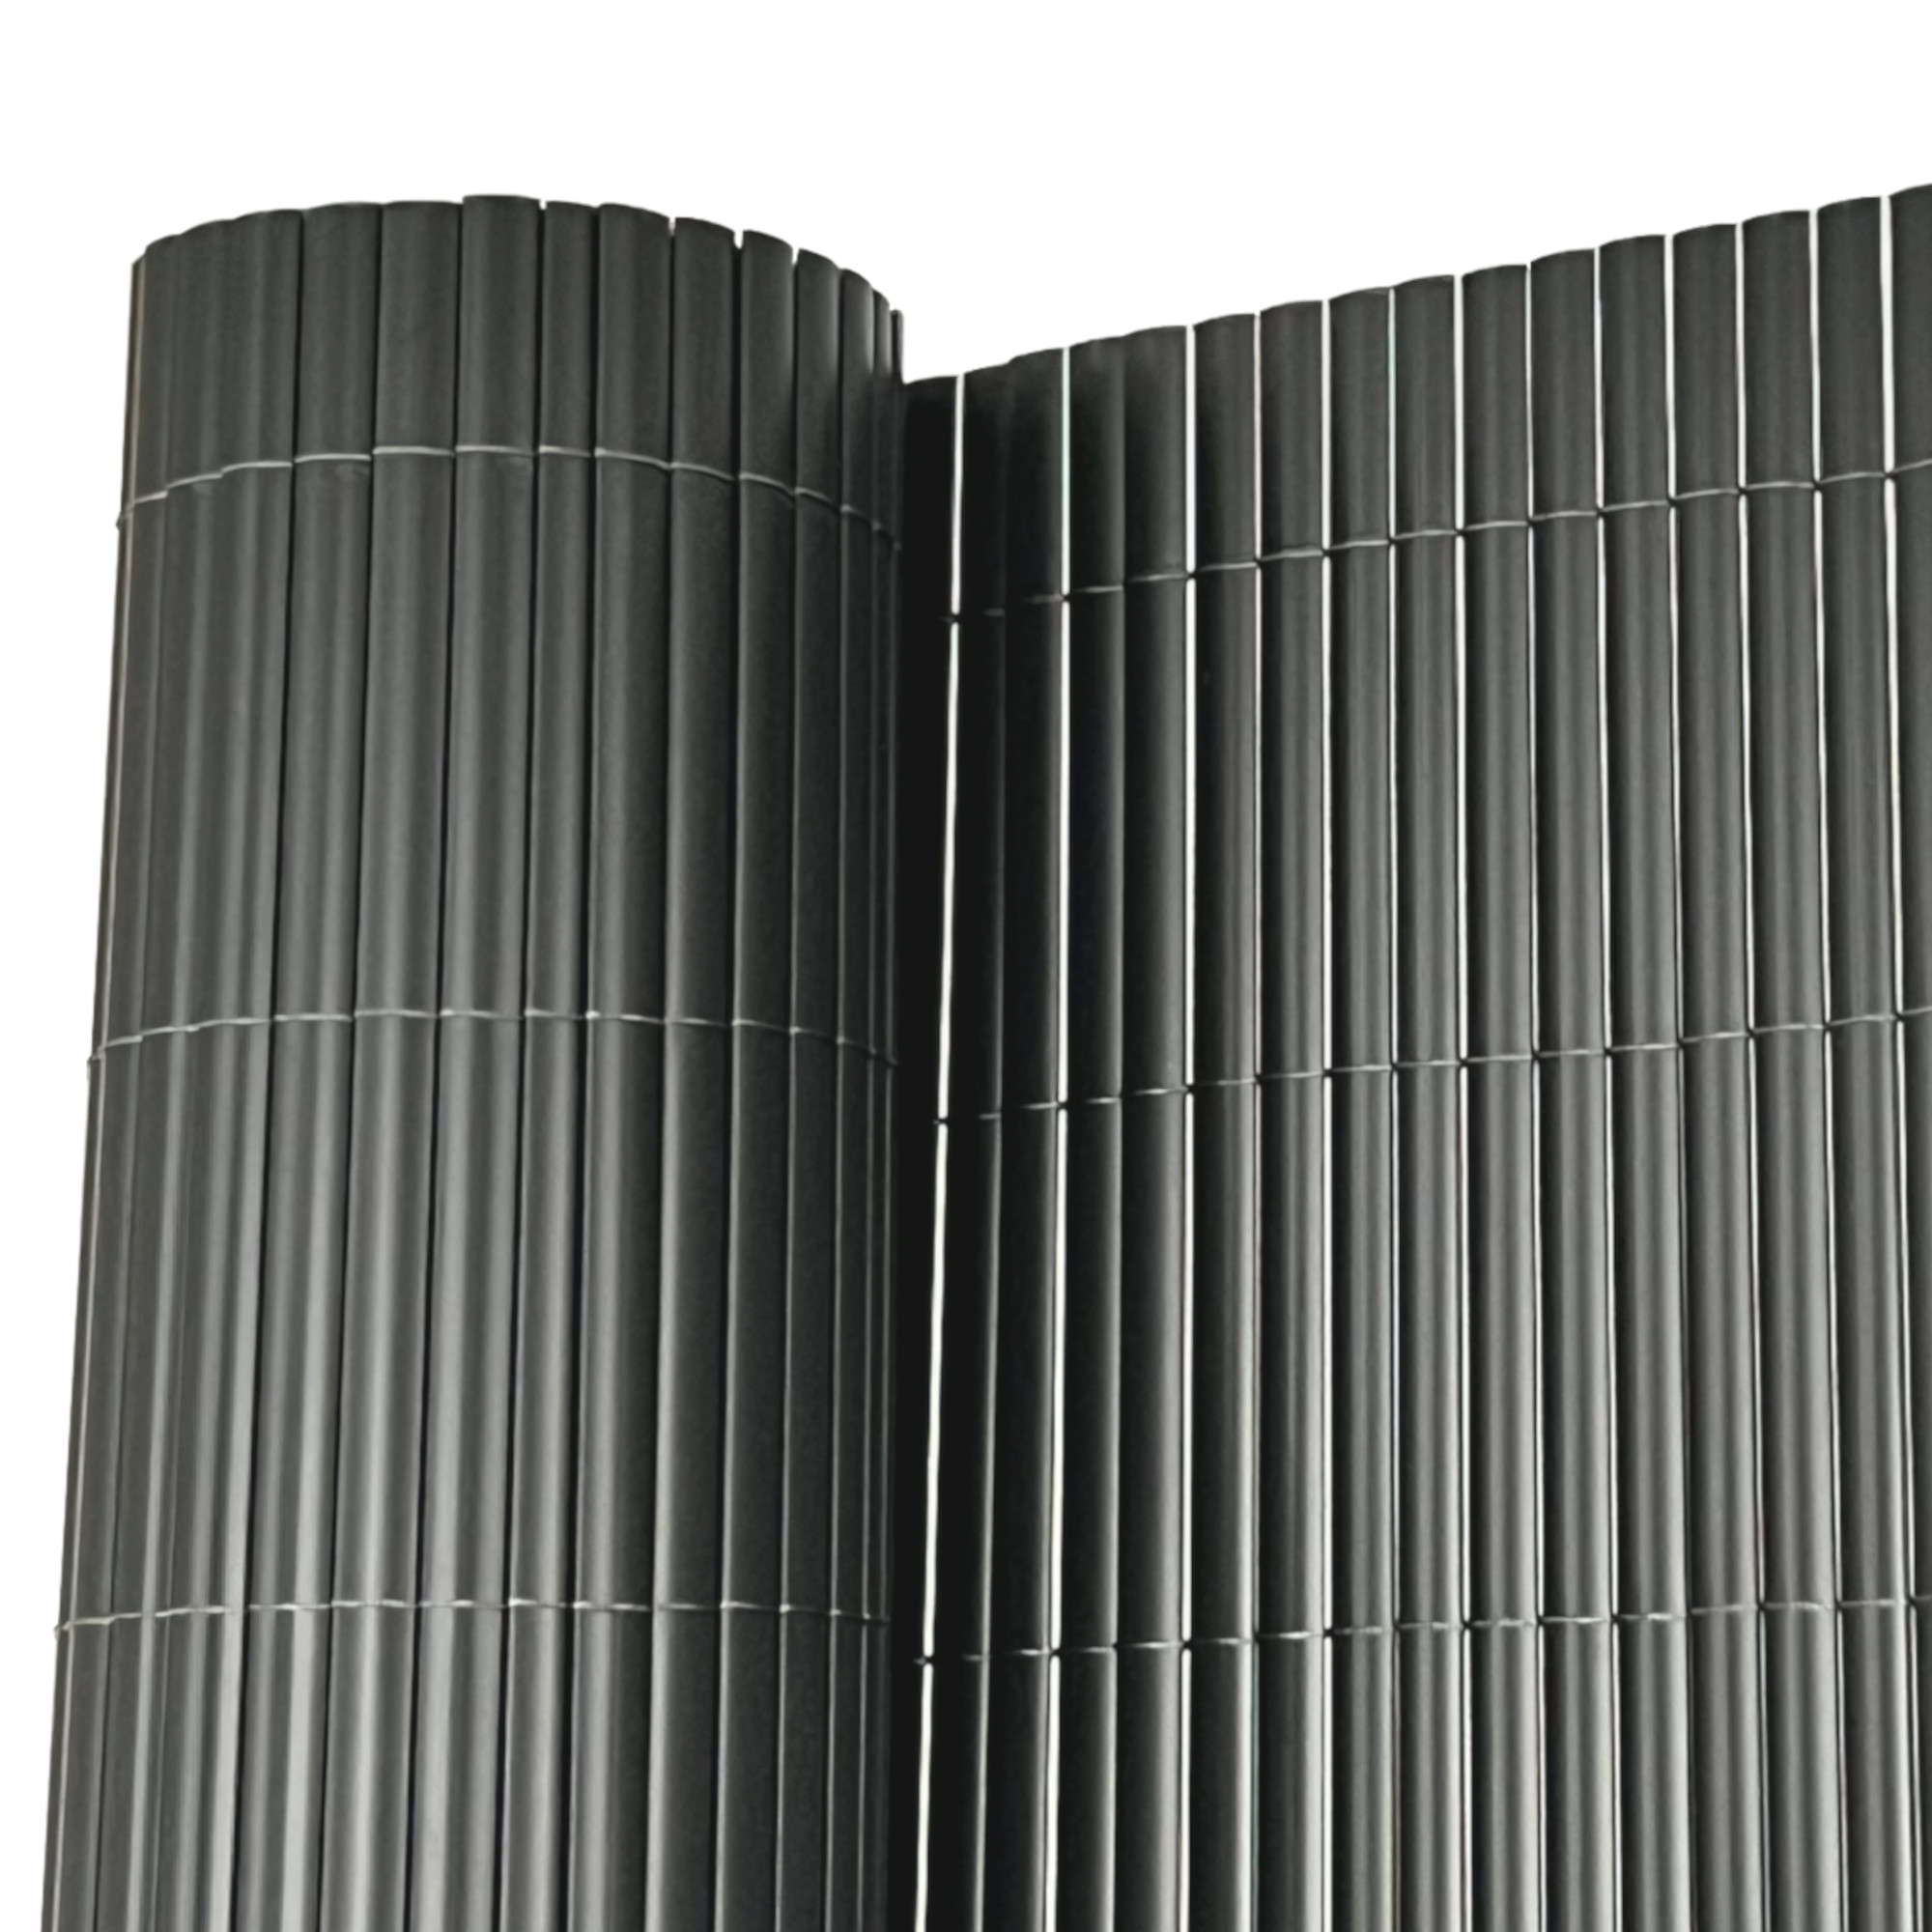 5m x 1.2m PVC Fencing (Grey)